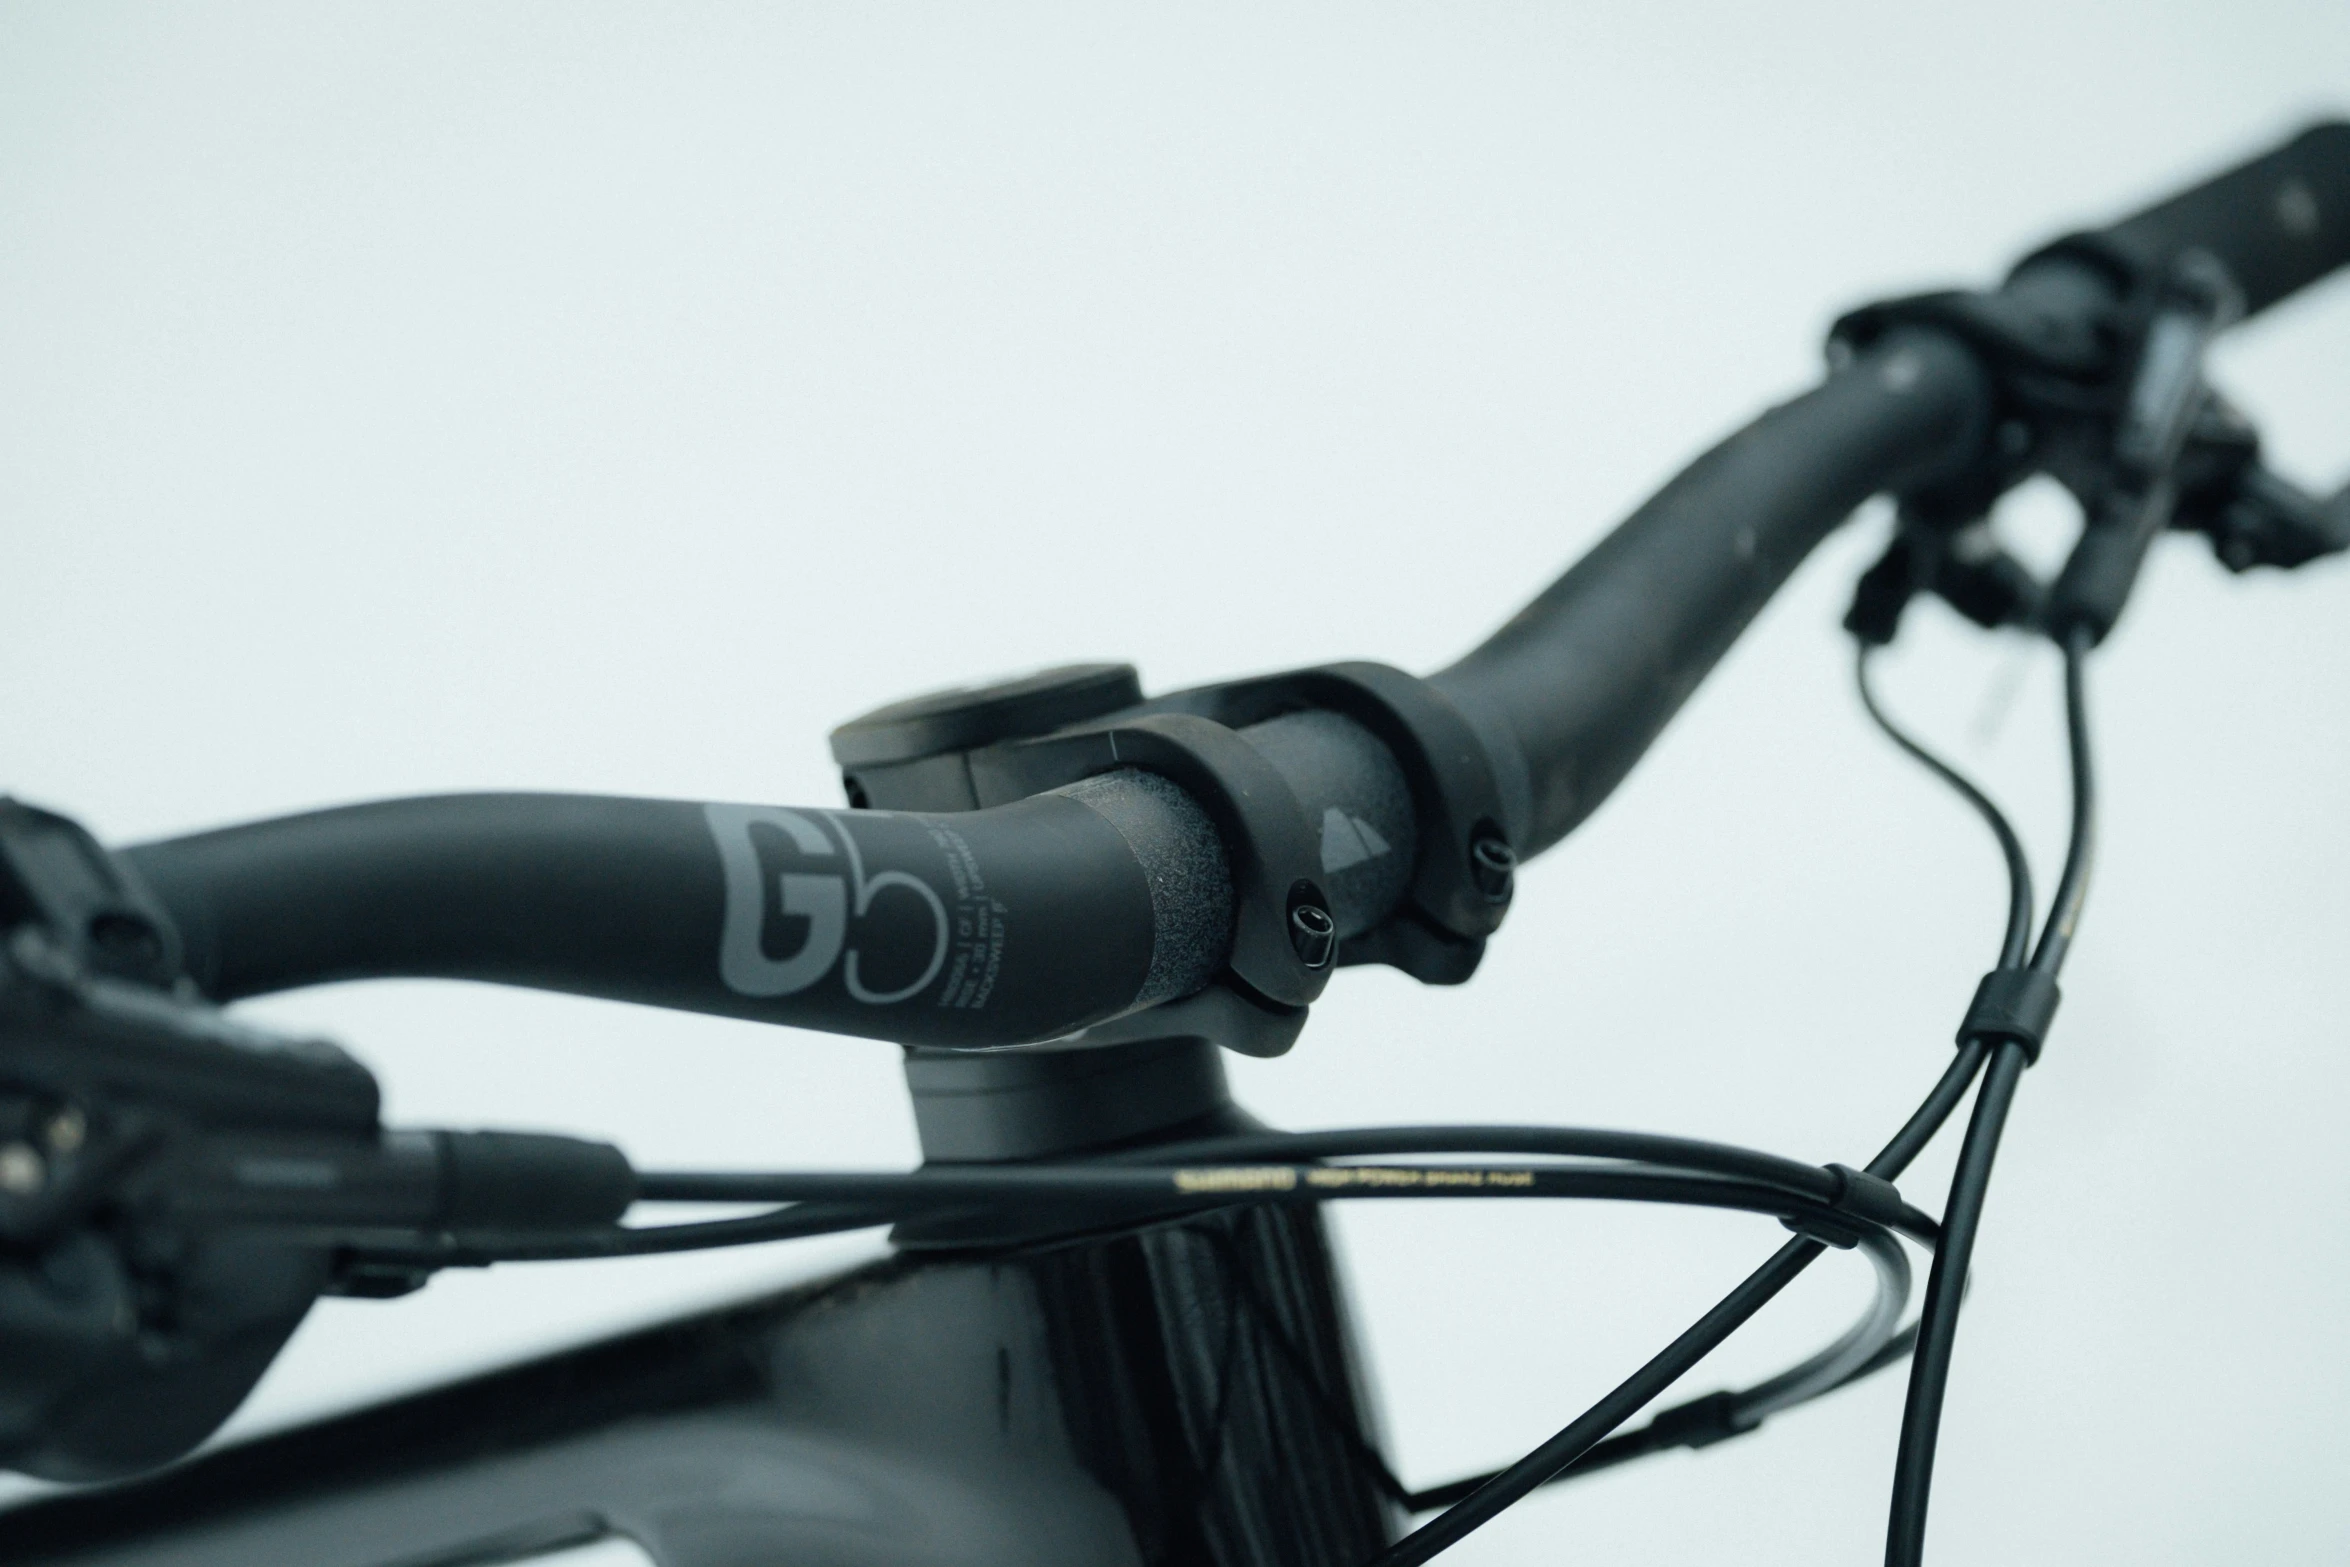 the seatpost and handlebars of a bike